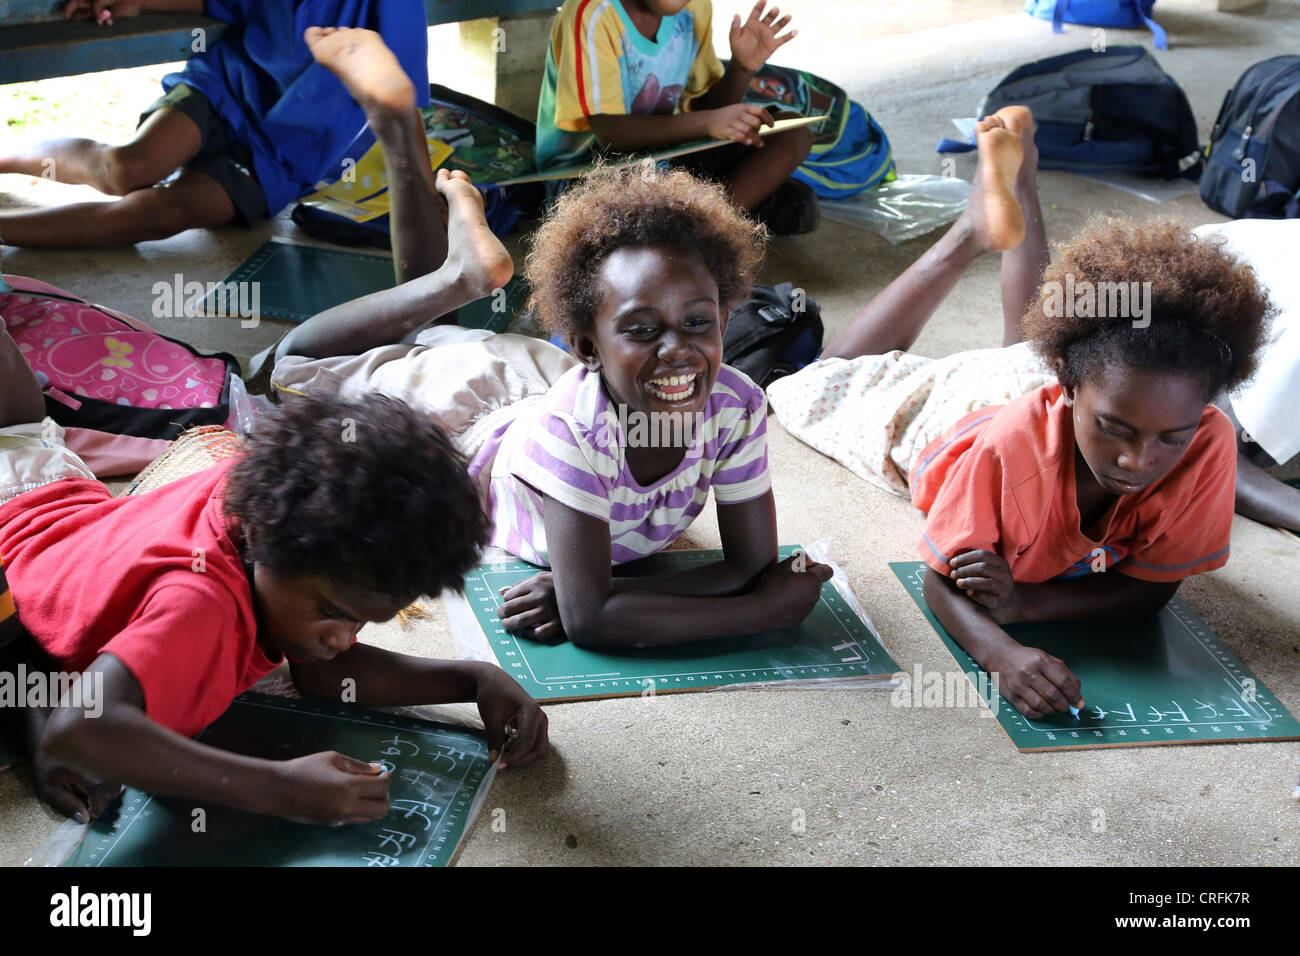 Las niñas sonrientes en un aula de una escuela primaria en Buka, la Isla Bougainville, Papua Neuguinea Foto de stock